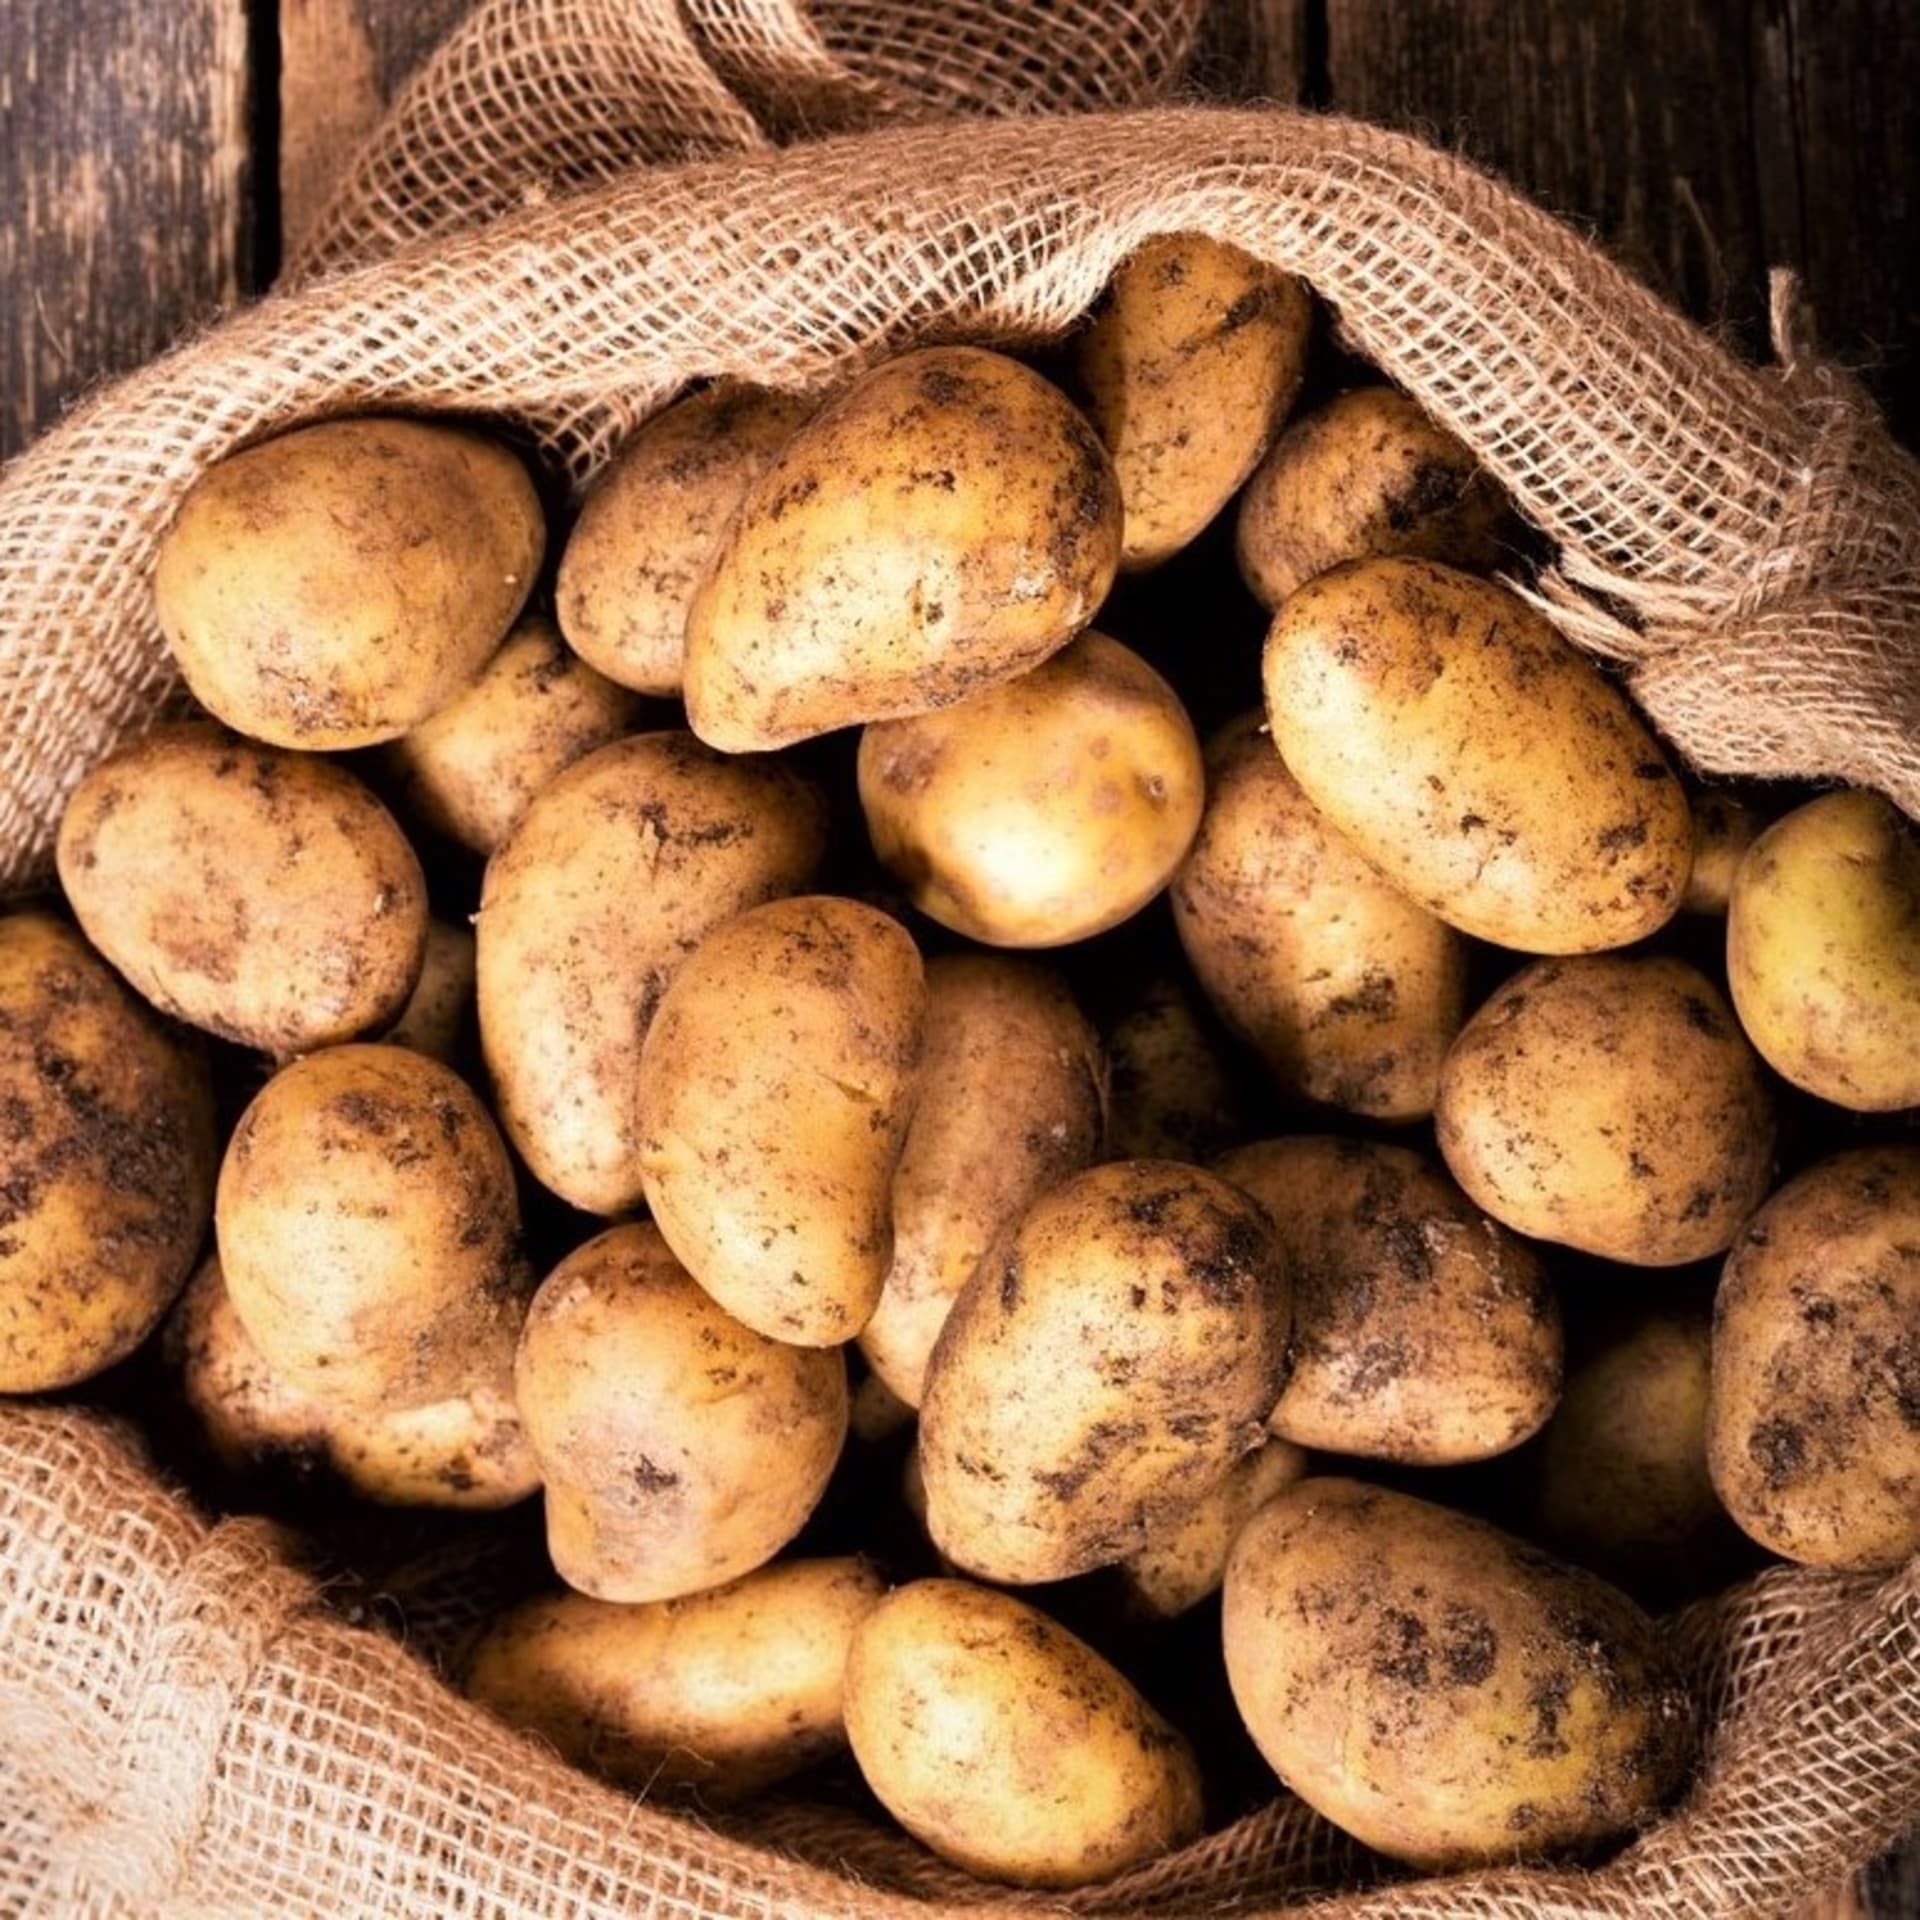 Čeští zemědělci mají přebytek brambor a bojí se, že je budou muset zlikvidovat.